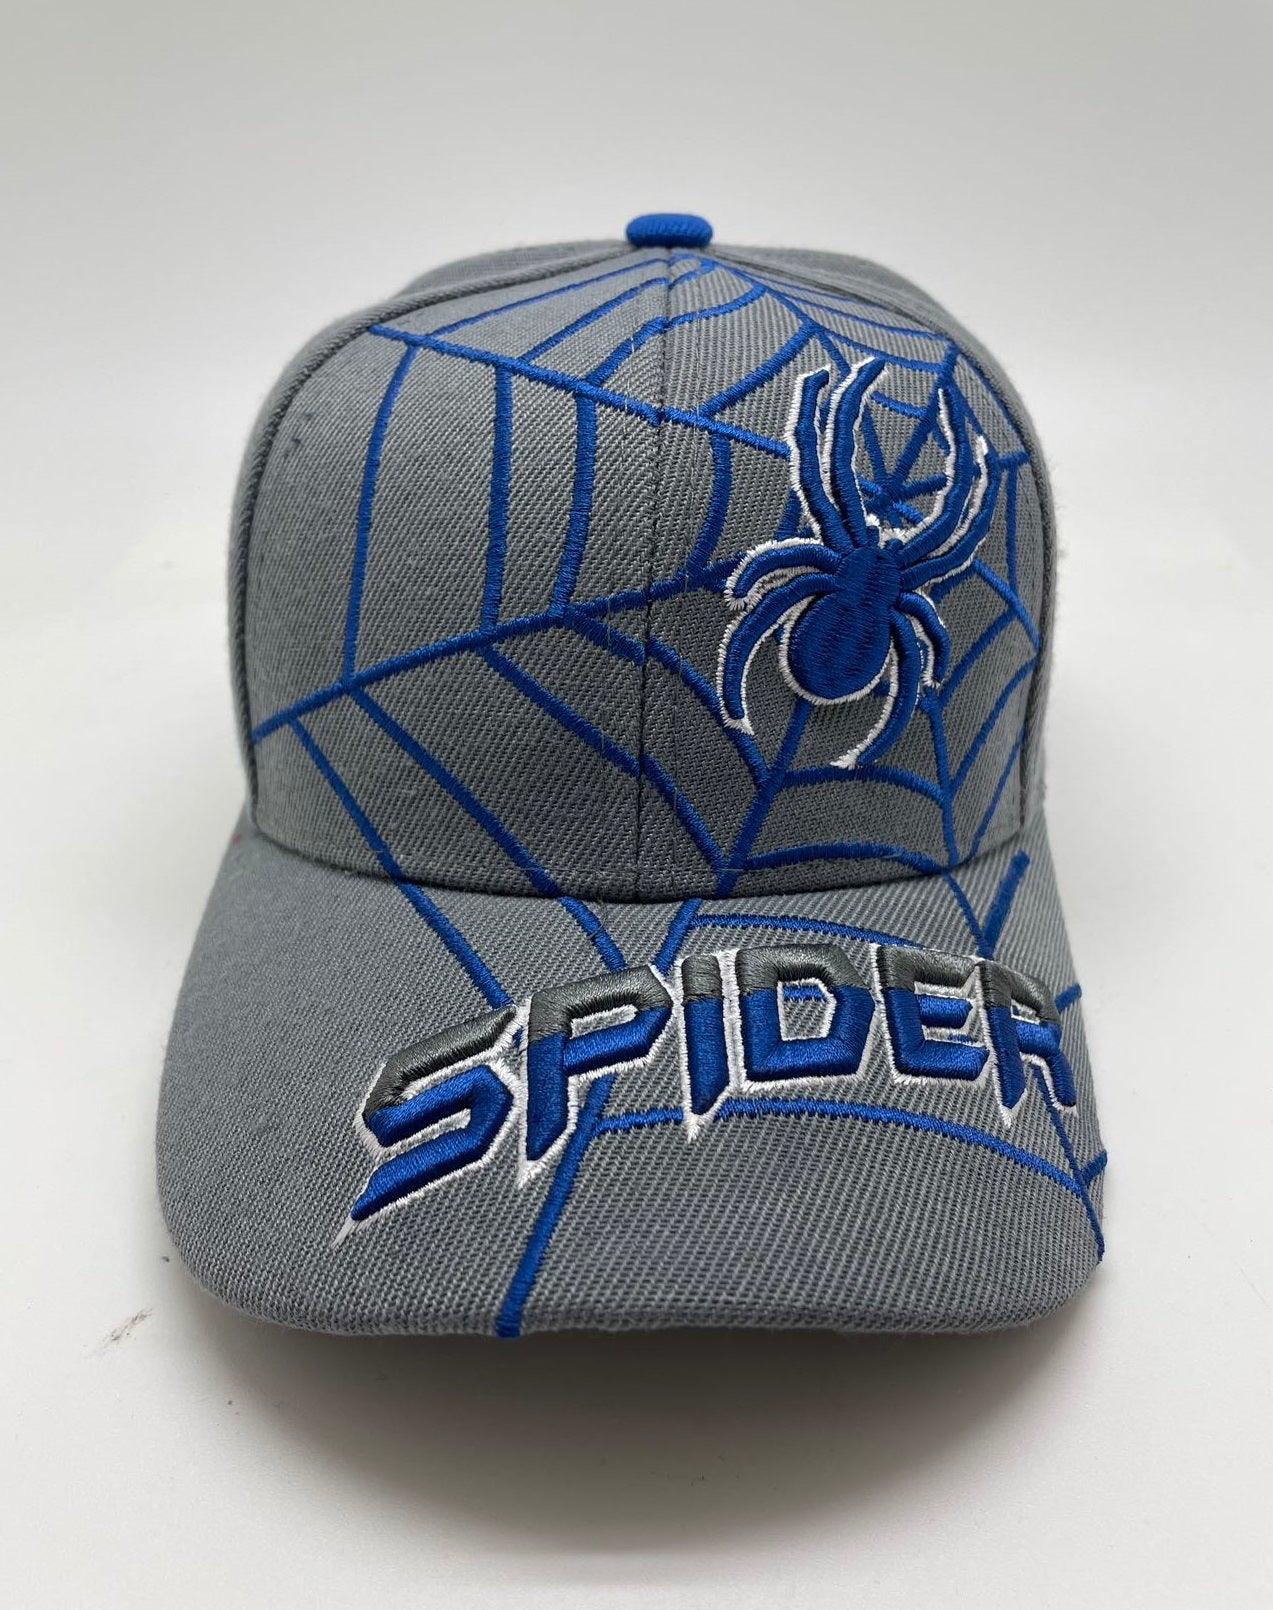 Spider Hat for Kids - Waycap INC